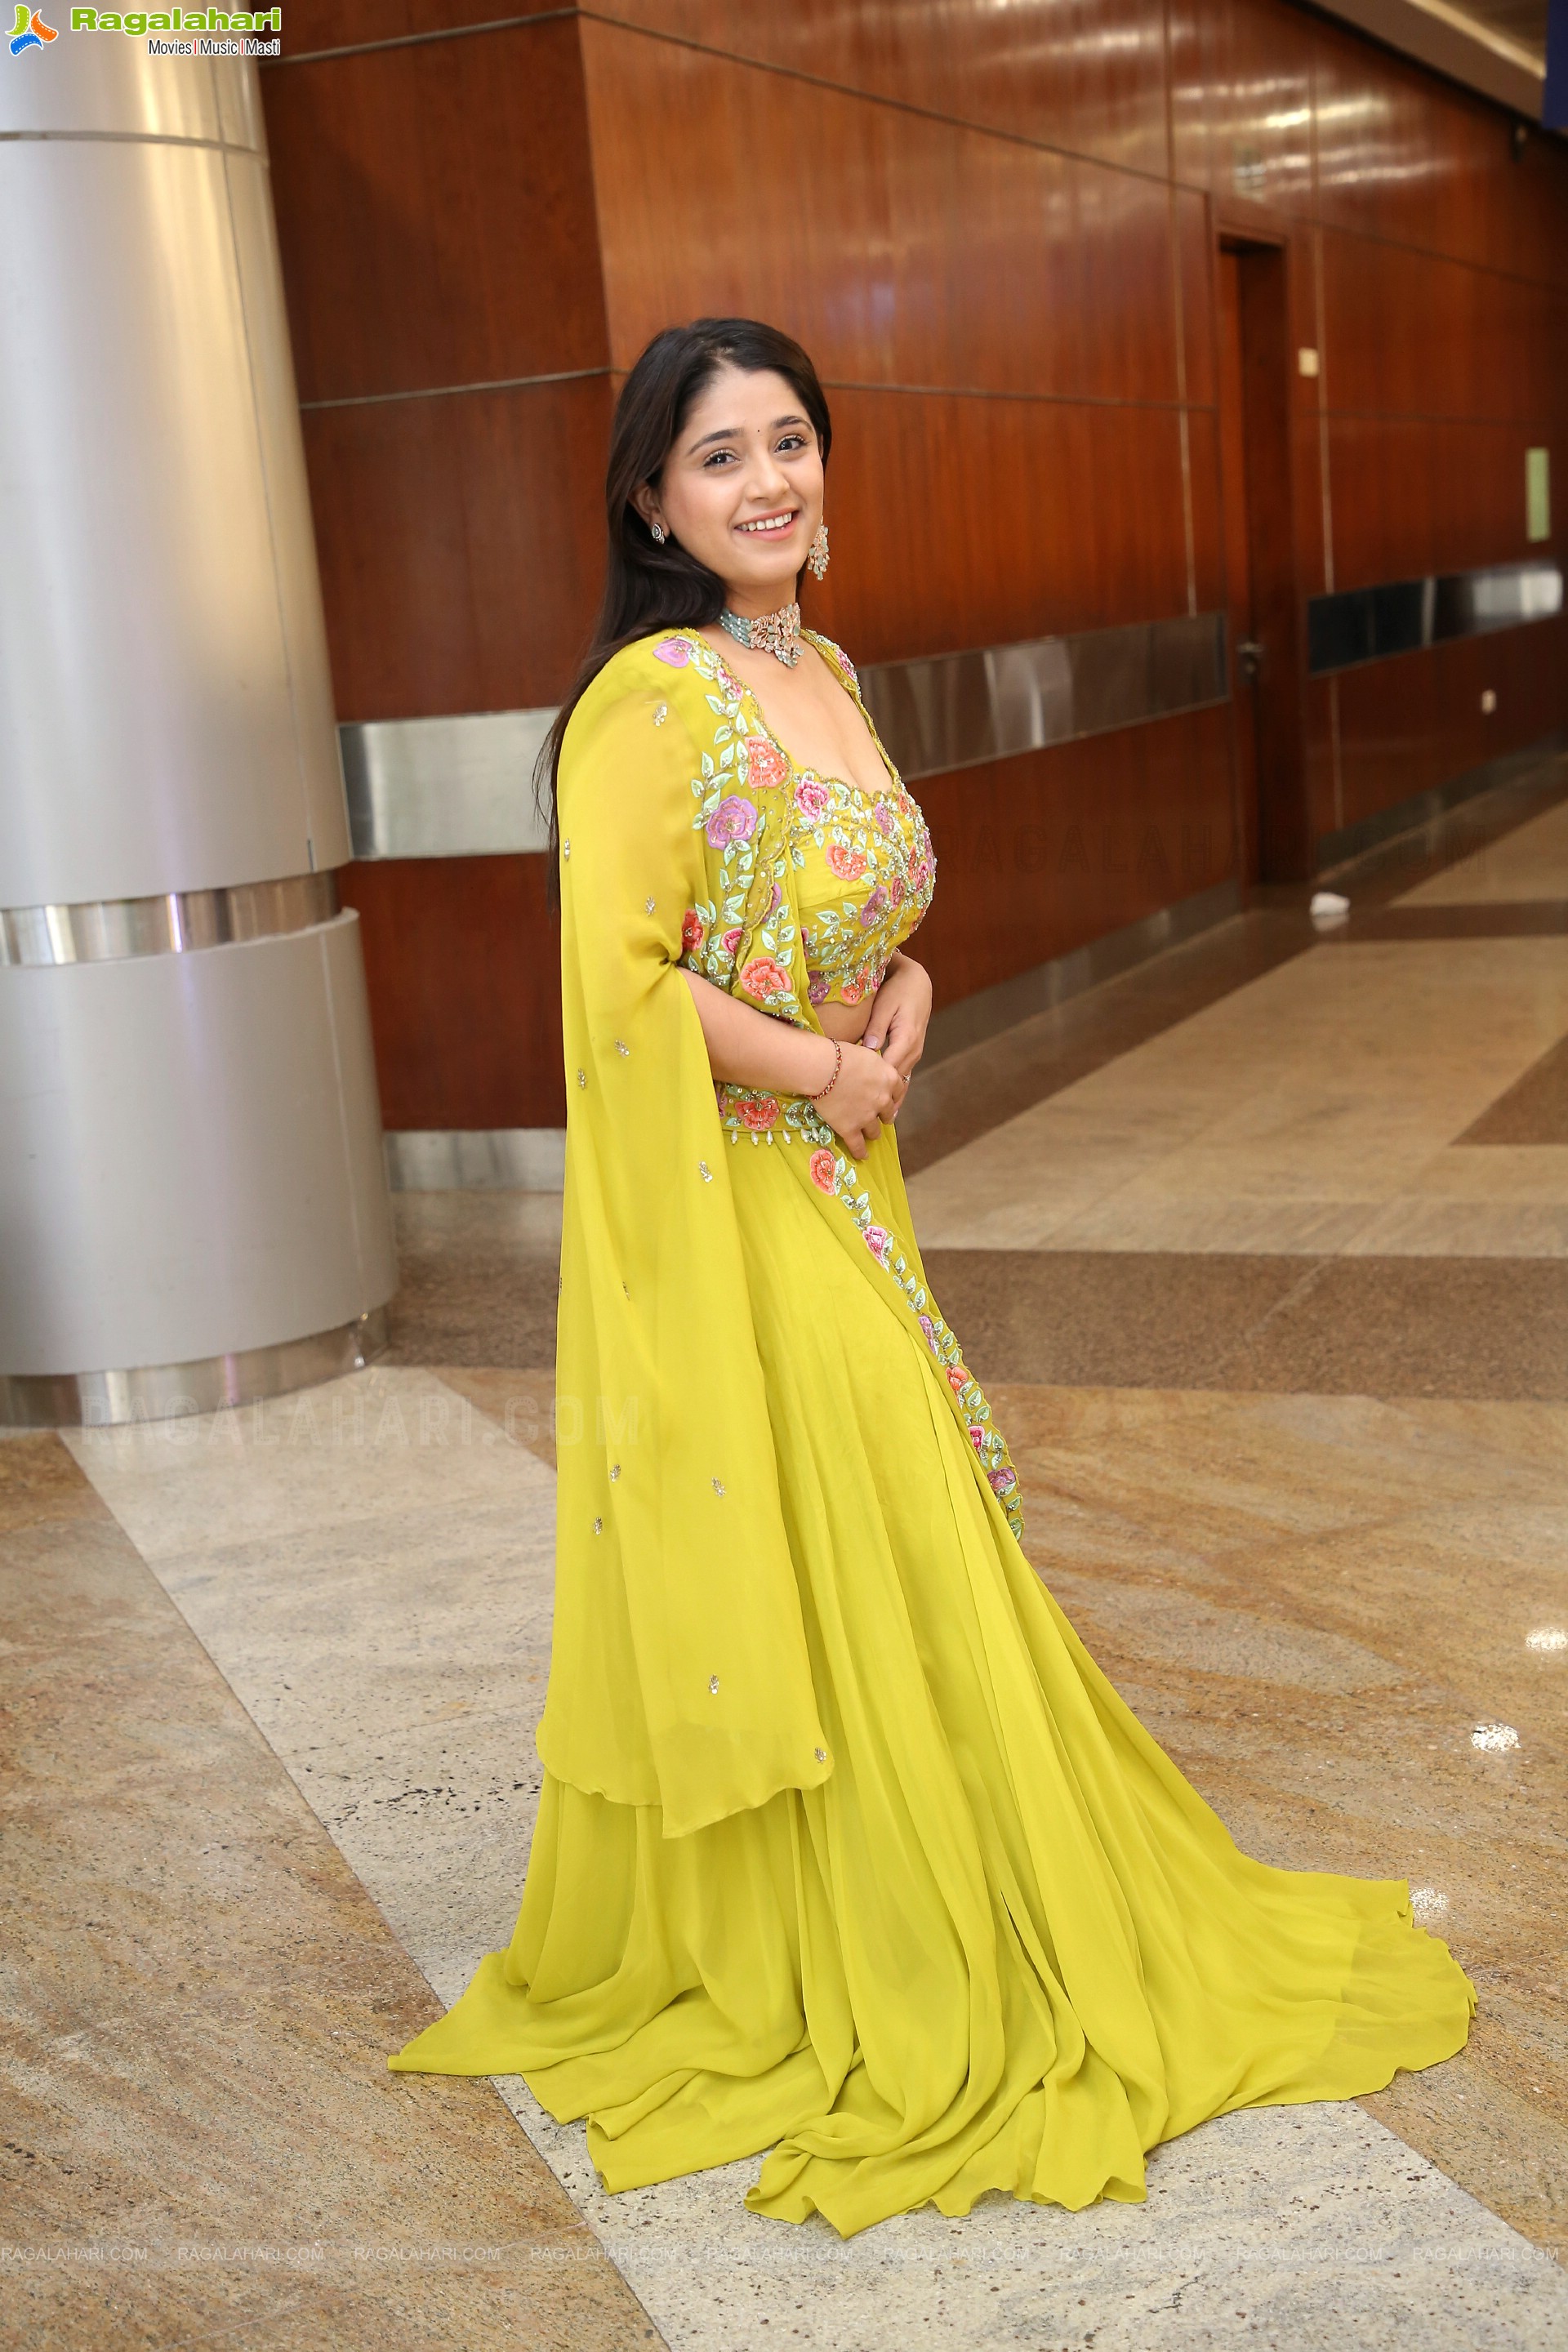 Chandni Bhagwanani in Designer Yellow Lehenga Choli, HD Photo Gallery